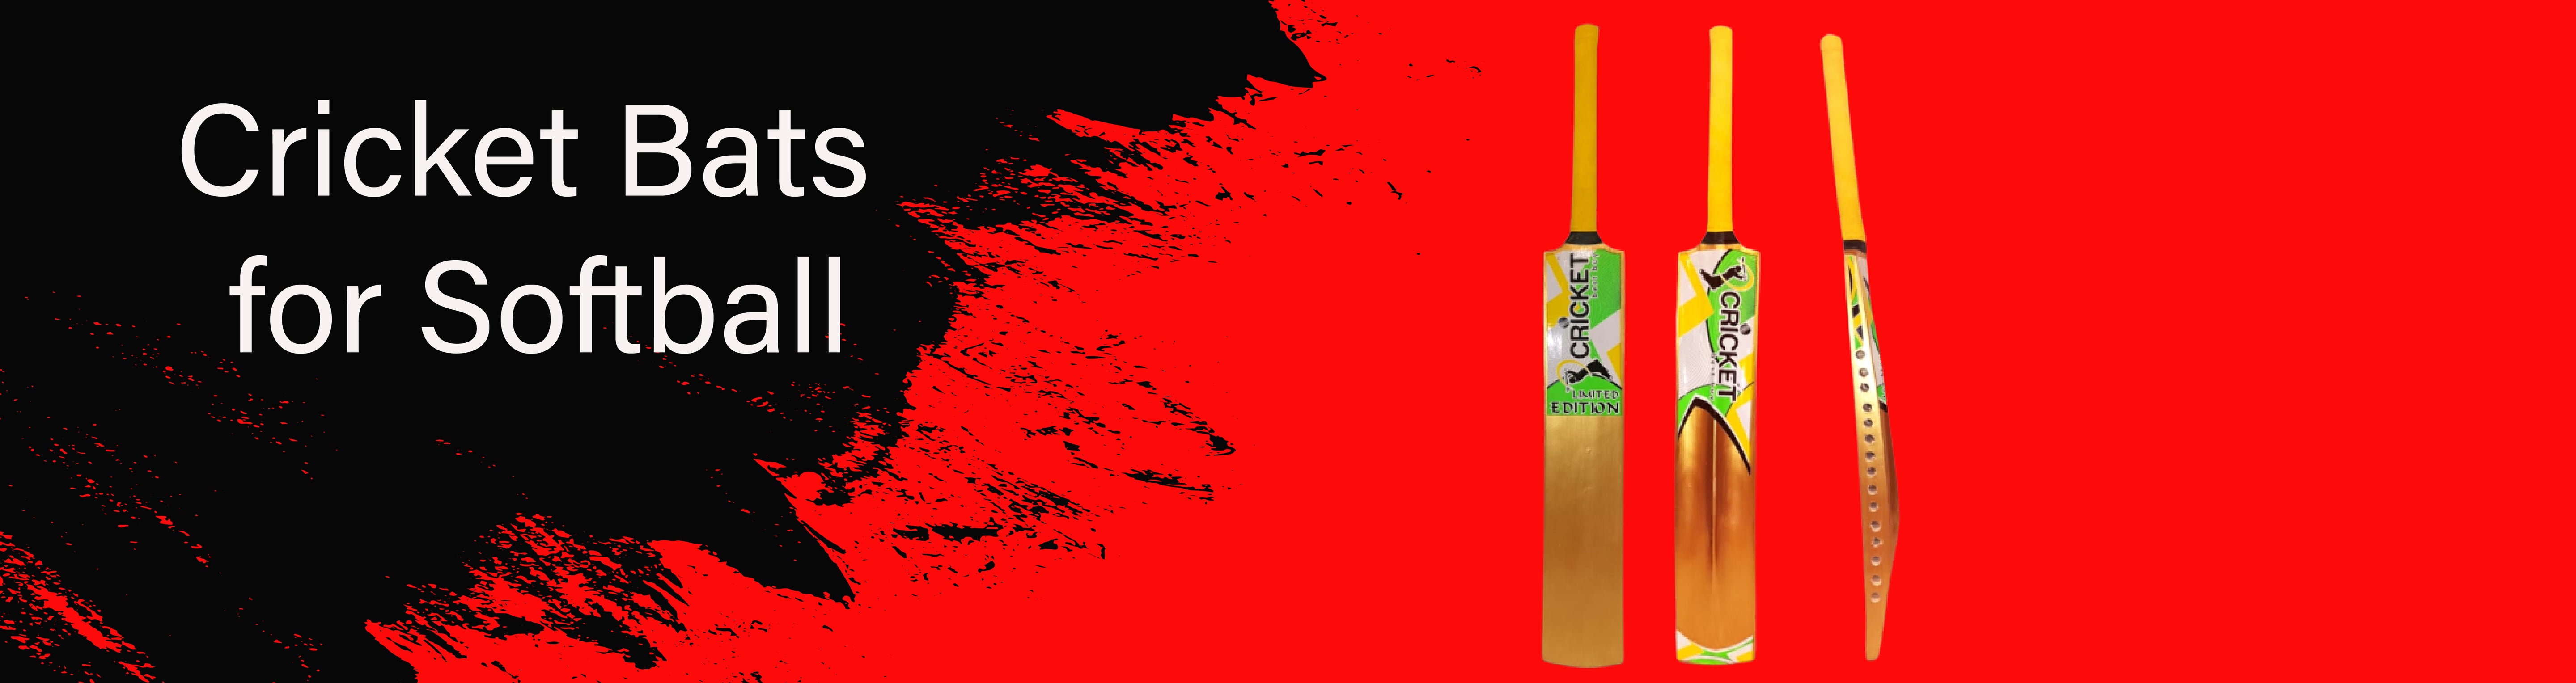 BATS - Cricket Bats for Softball Tape Tennis Light Ball-